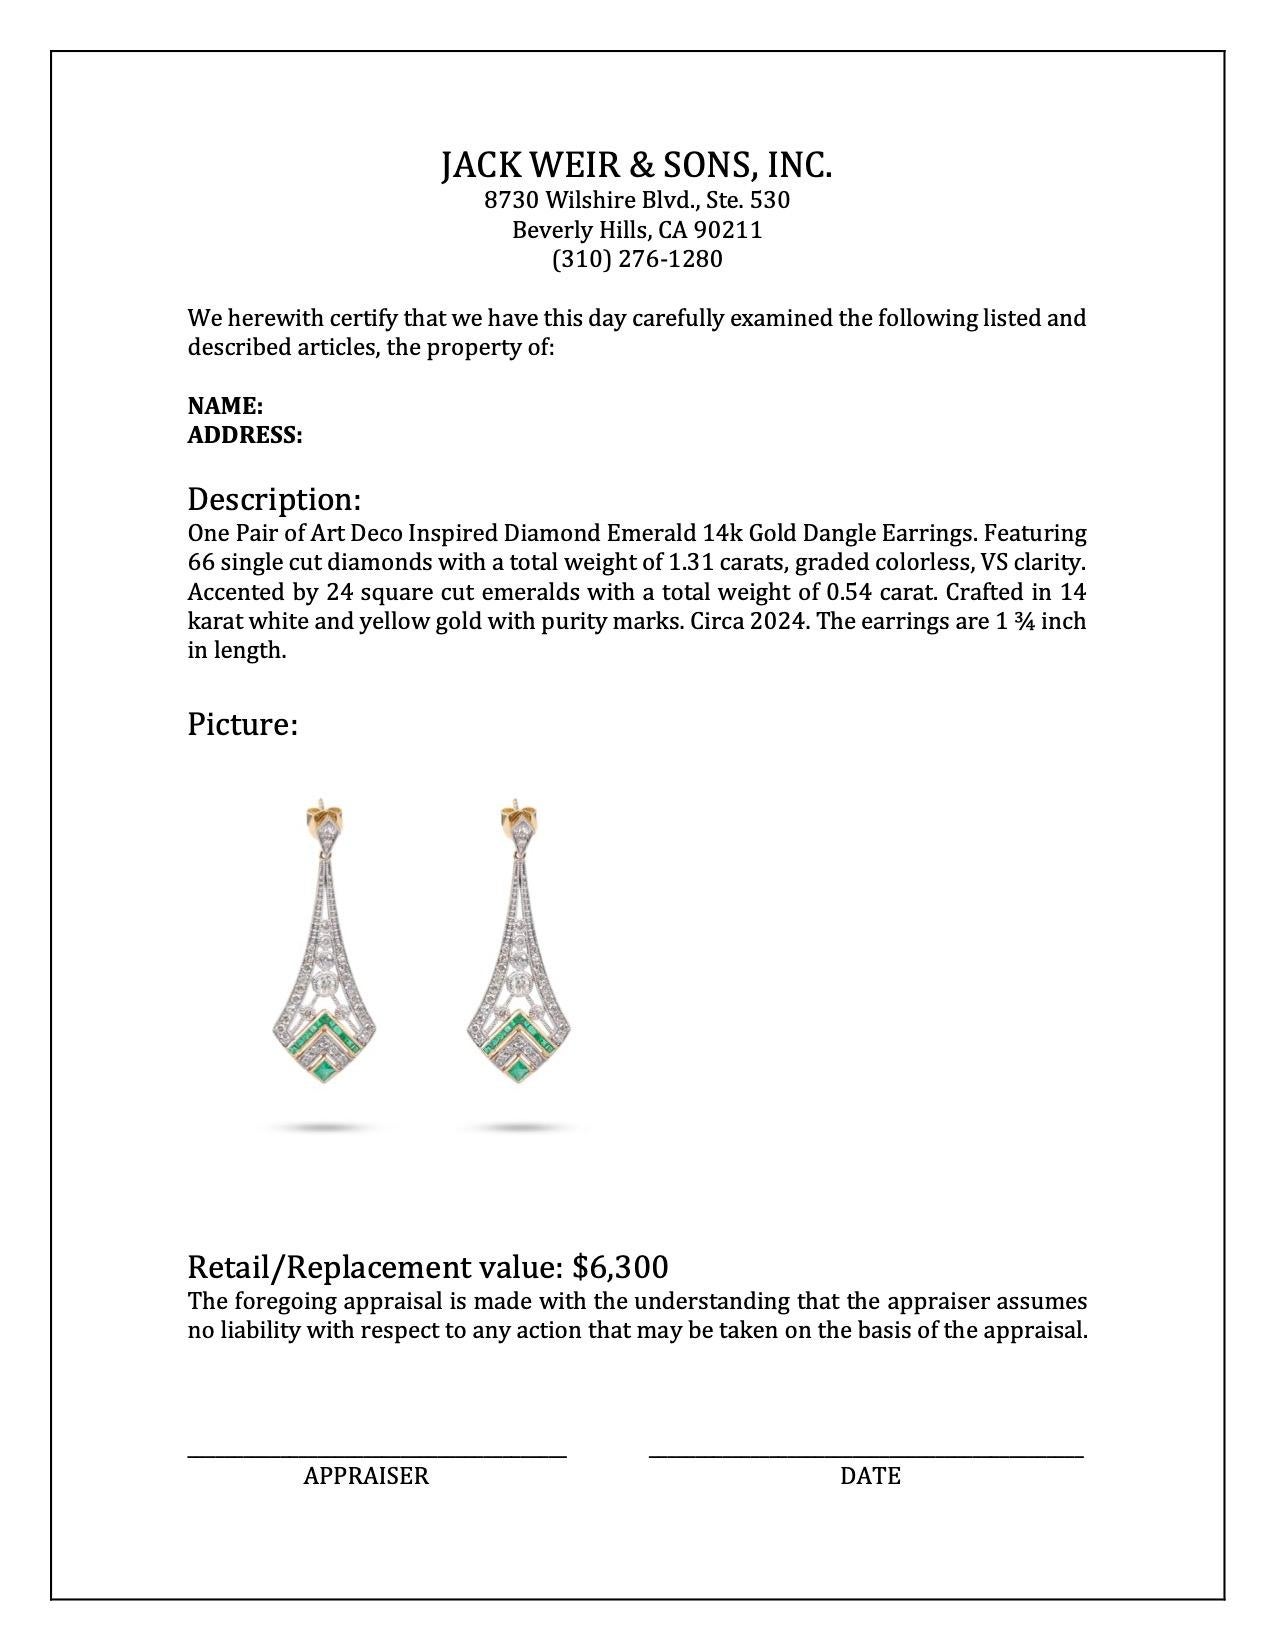 Art Deco Inspired Diamond Emerald 14k Gold Dangle Earrings For Sale 1